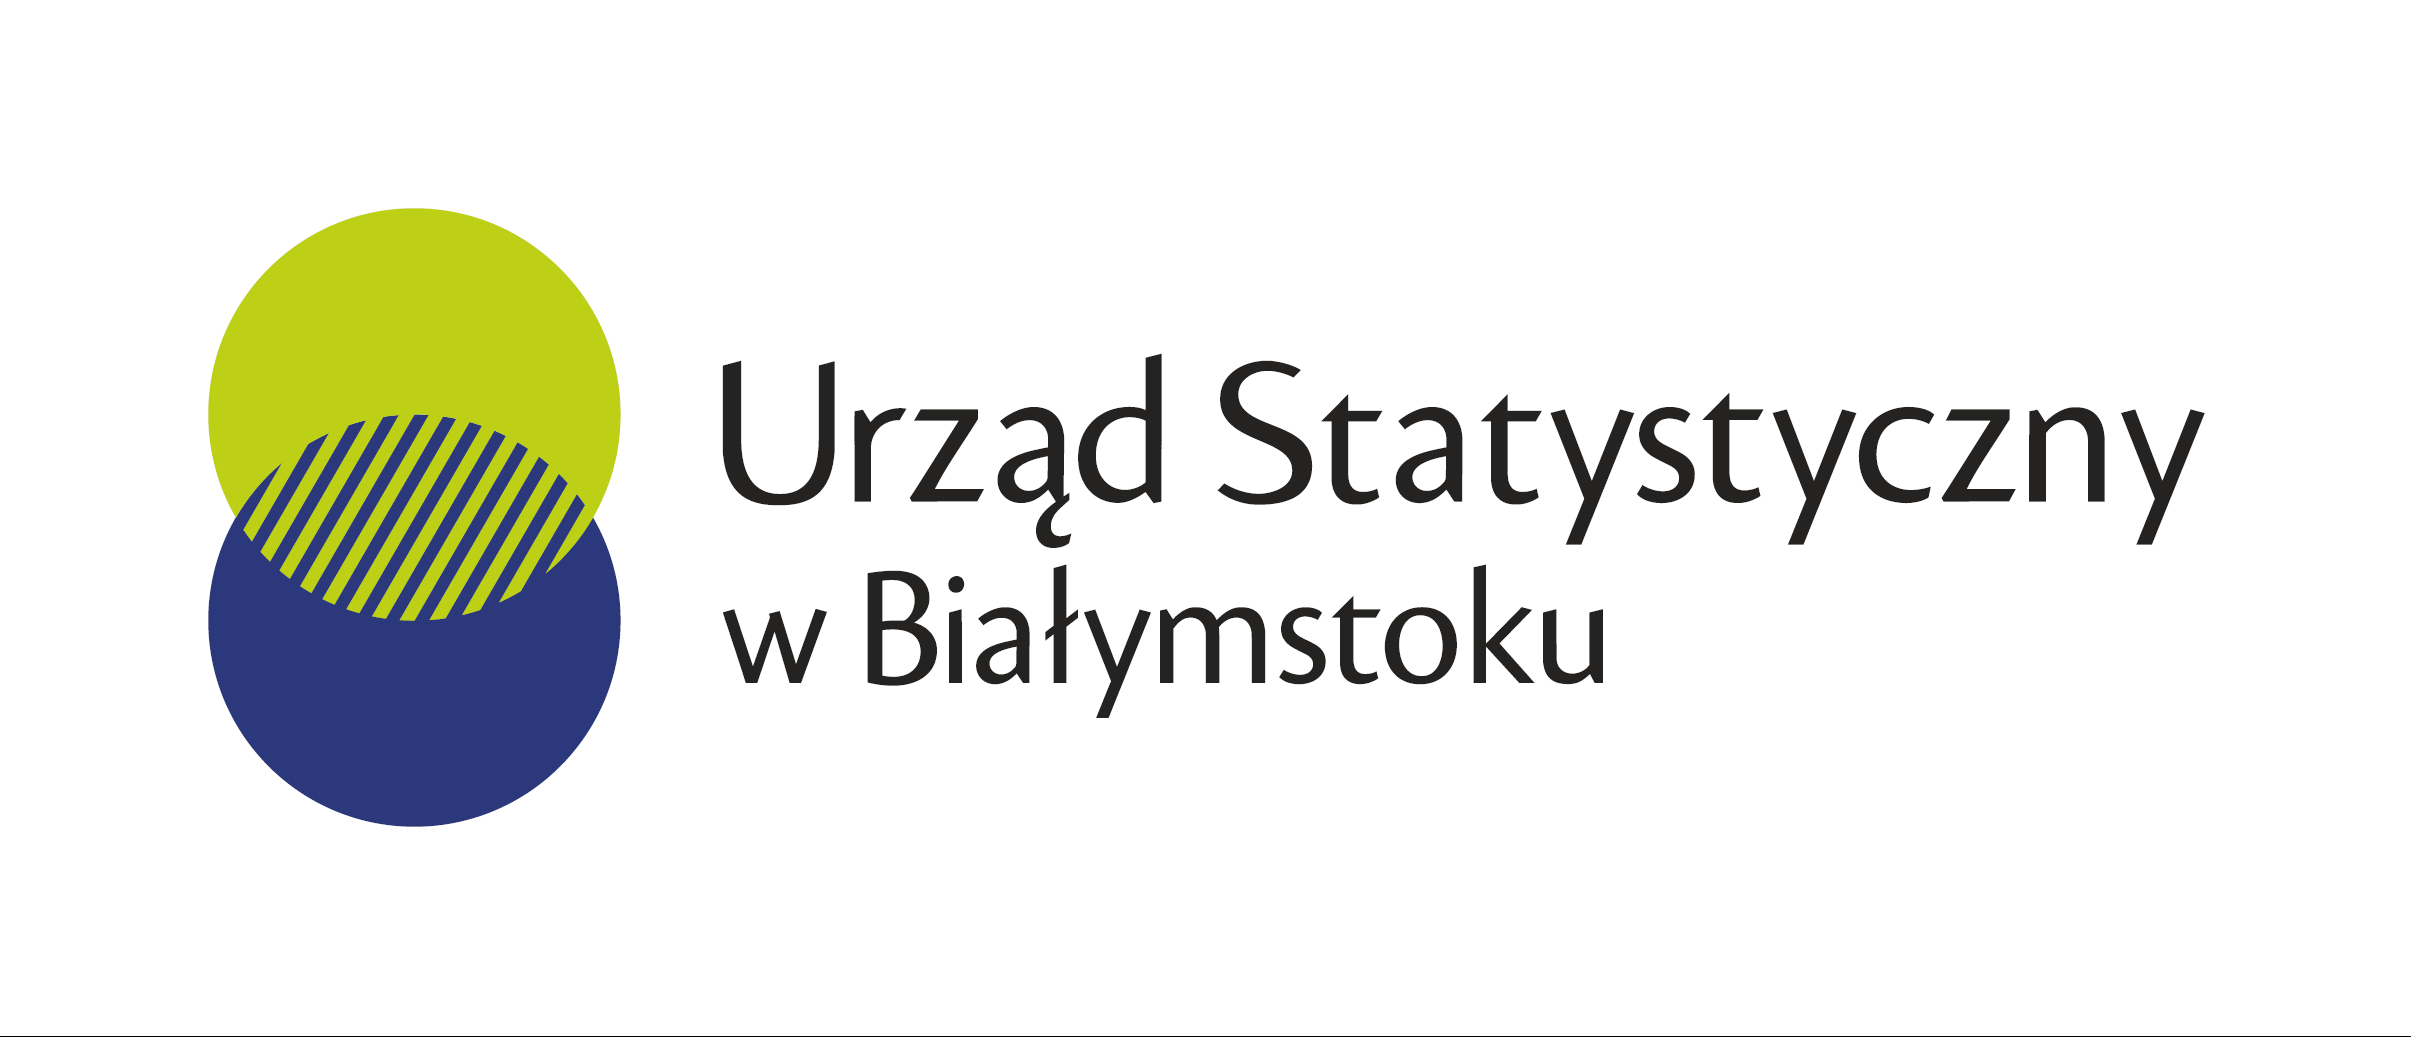 Urząd Statystyczny w Białymstoku